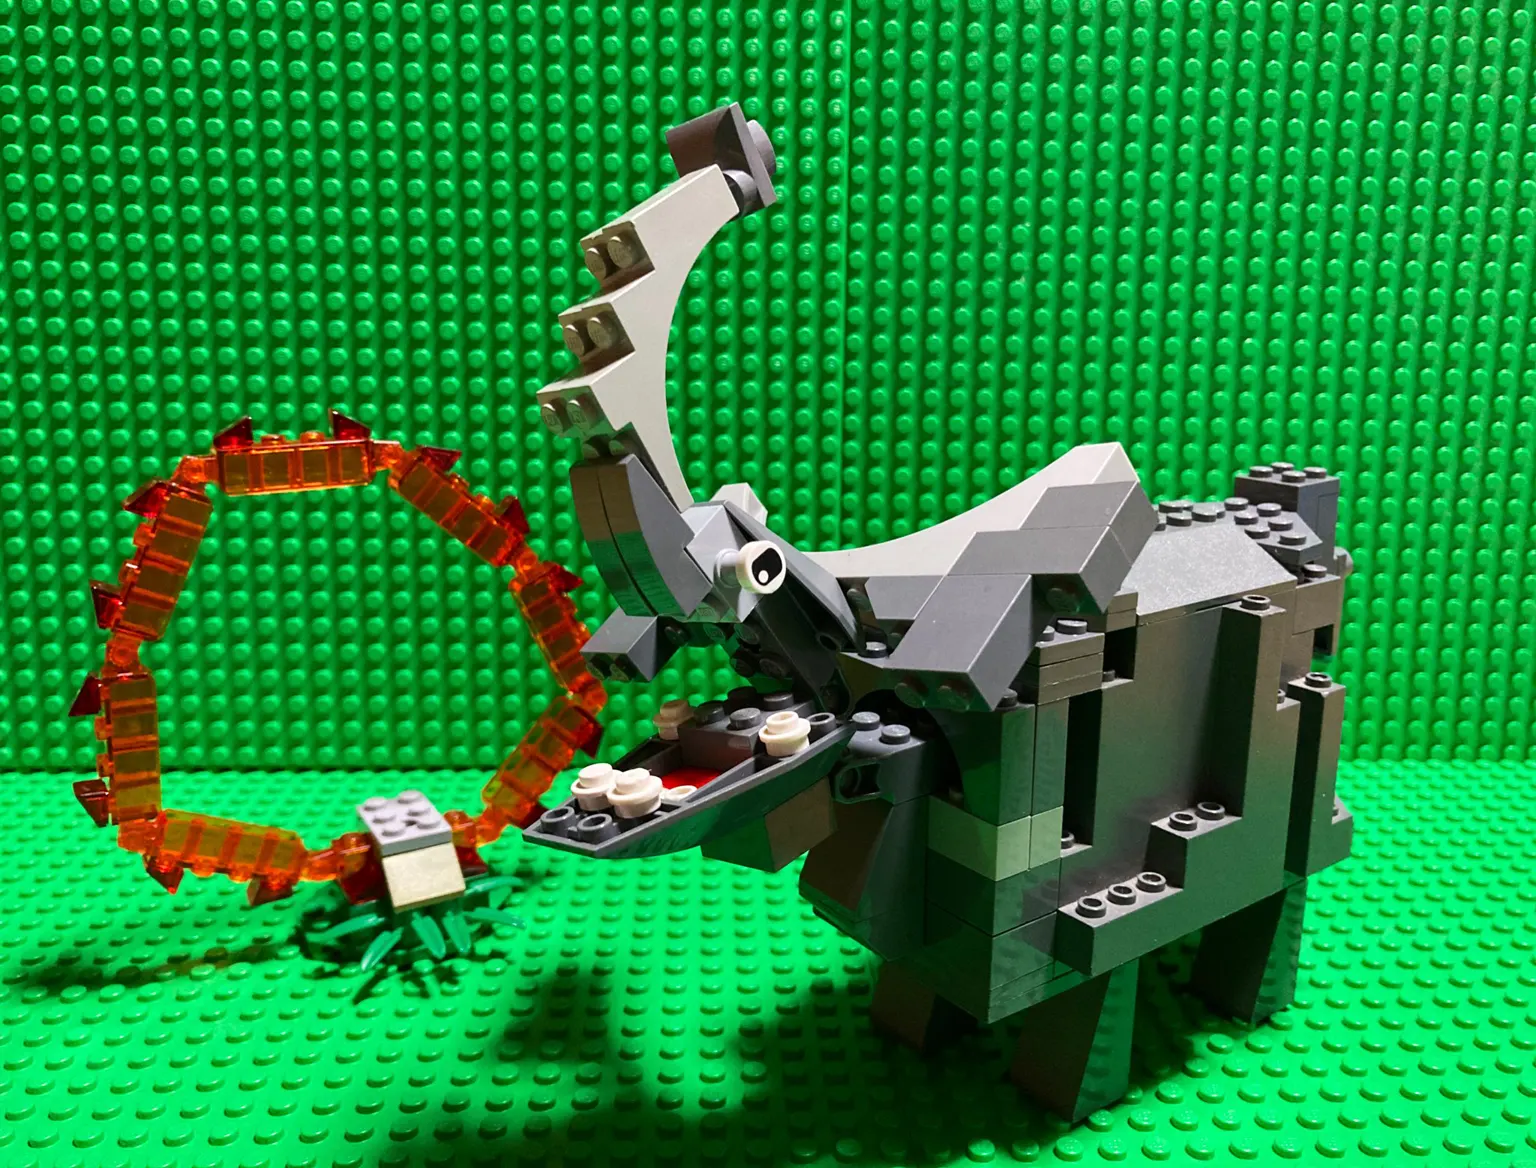 キッズビルダーレゴ R Lego R 動物 ビルドコンテスト スタッズ杯キッズ 21 スタッズ レゴ R Lego R 総合ファンニュースメディア